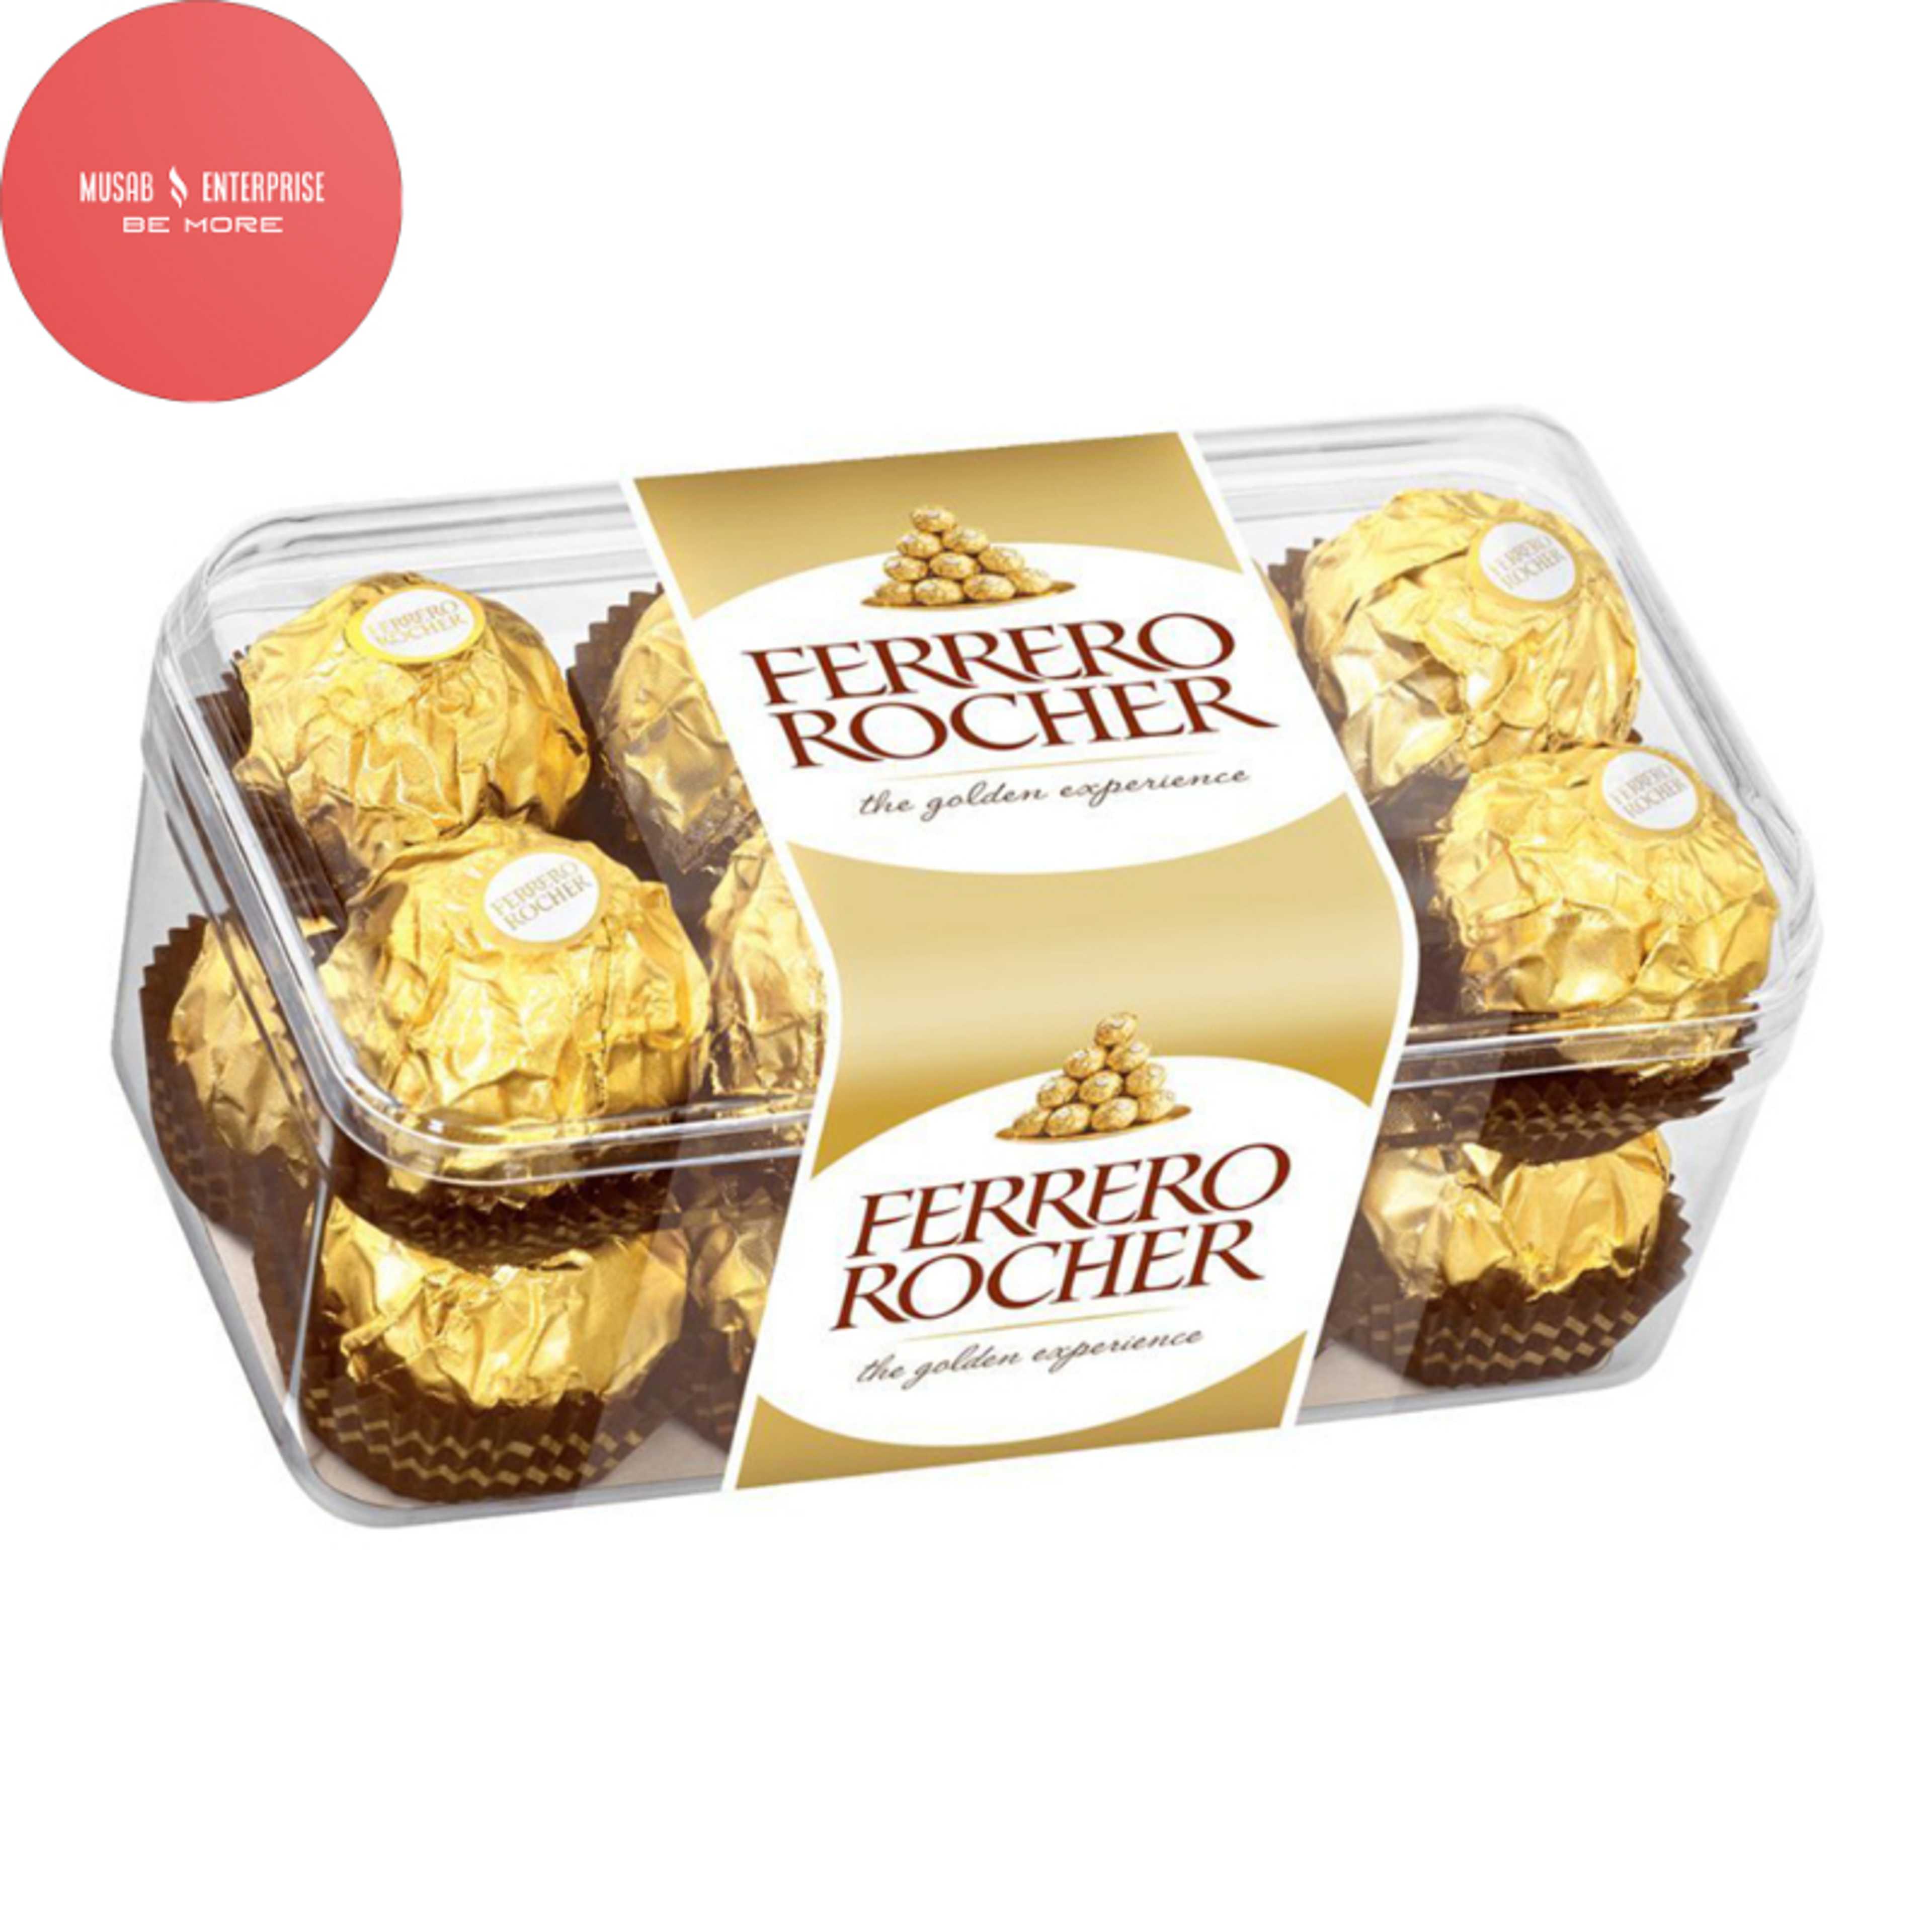 Ferrero Rocher Hazelnut Chocolate, T-16 200gm